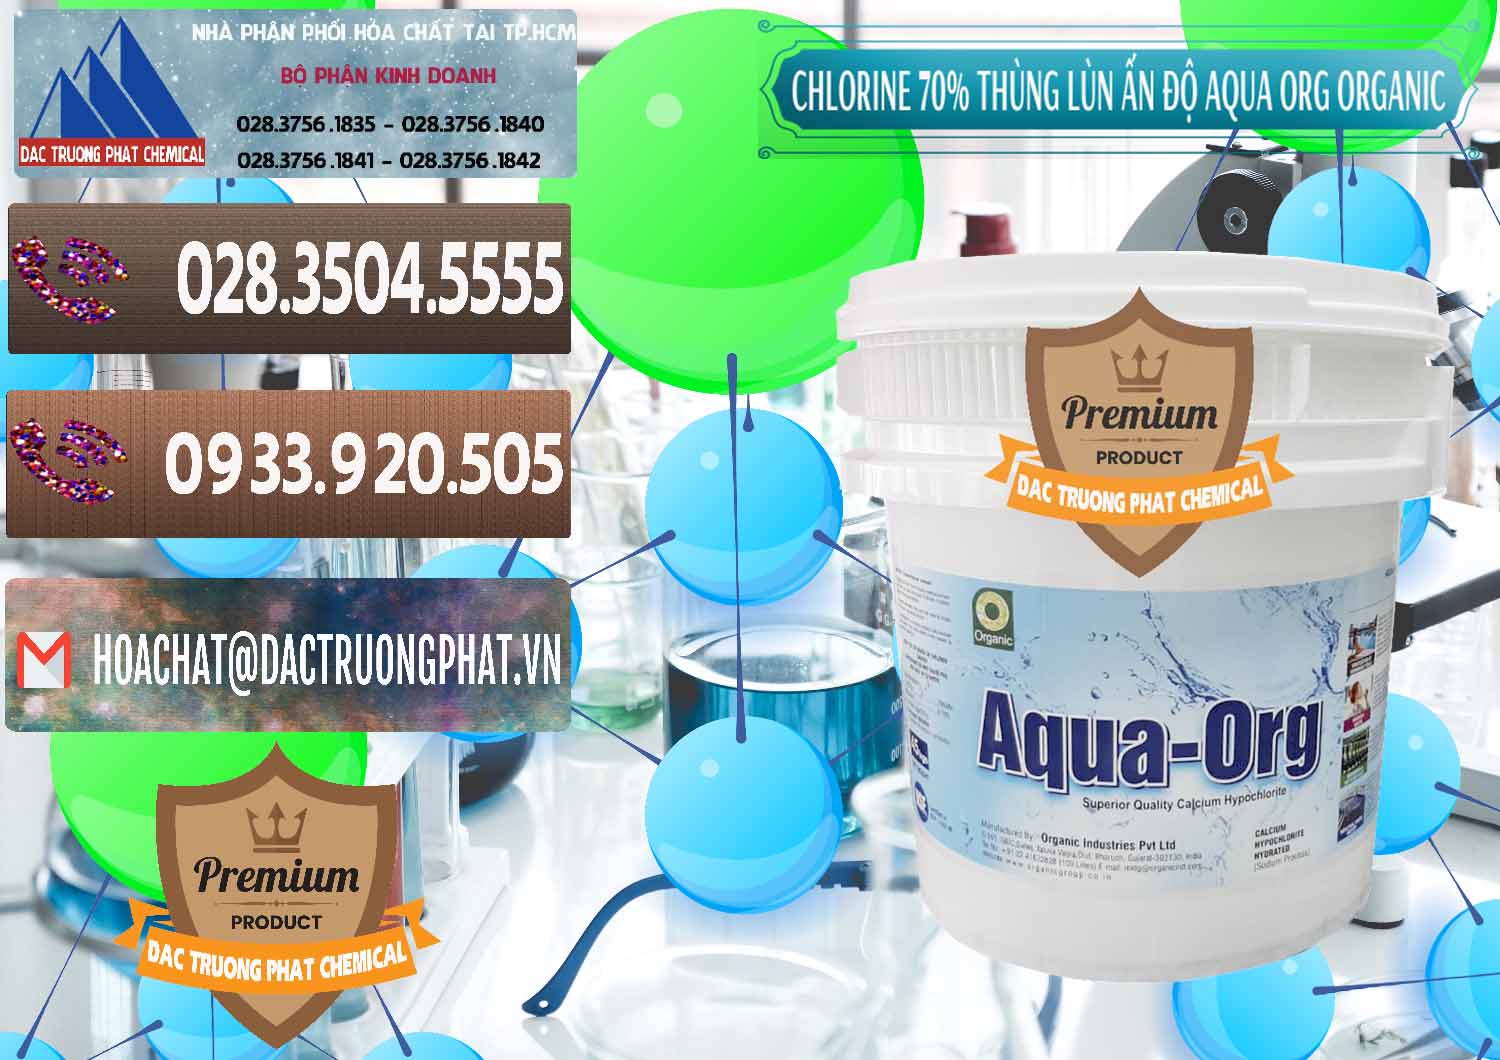 Cty chuyên bán - cung ứng Chlorine – Clorin 70% Thùng Lùn Ấn Độ Aqua ORG Organic India - 0212 - Nơi chuyên phân phối và kinh doanh hóa chất tại TP.HCM - hoachatviet.net